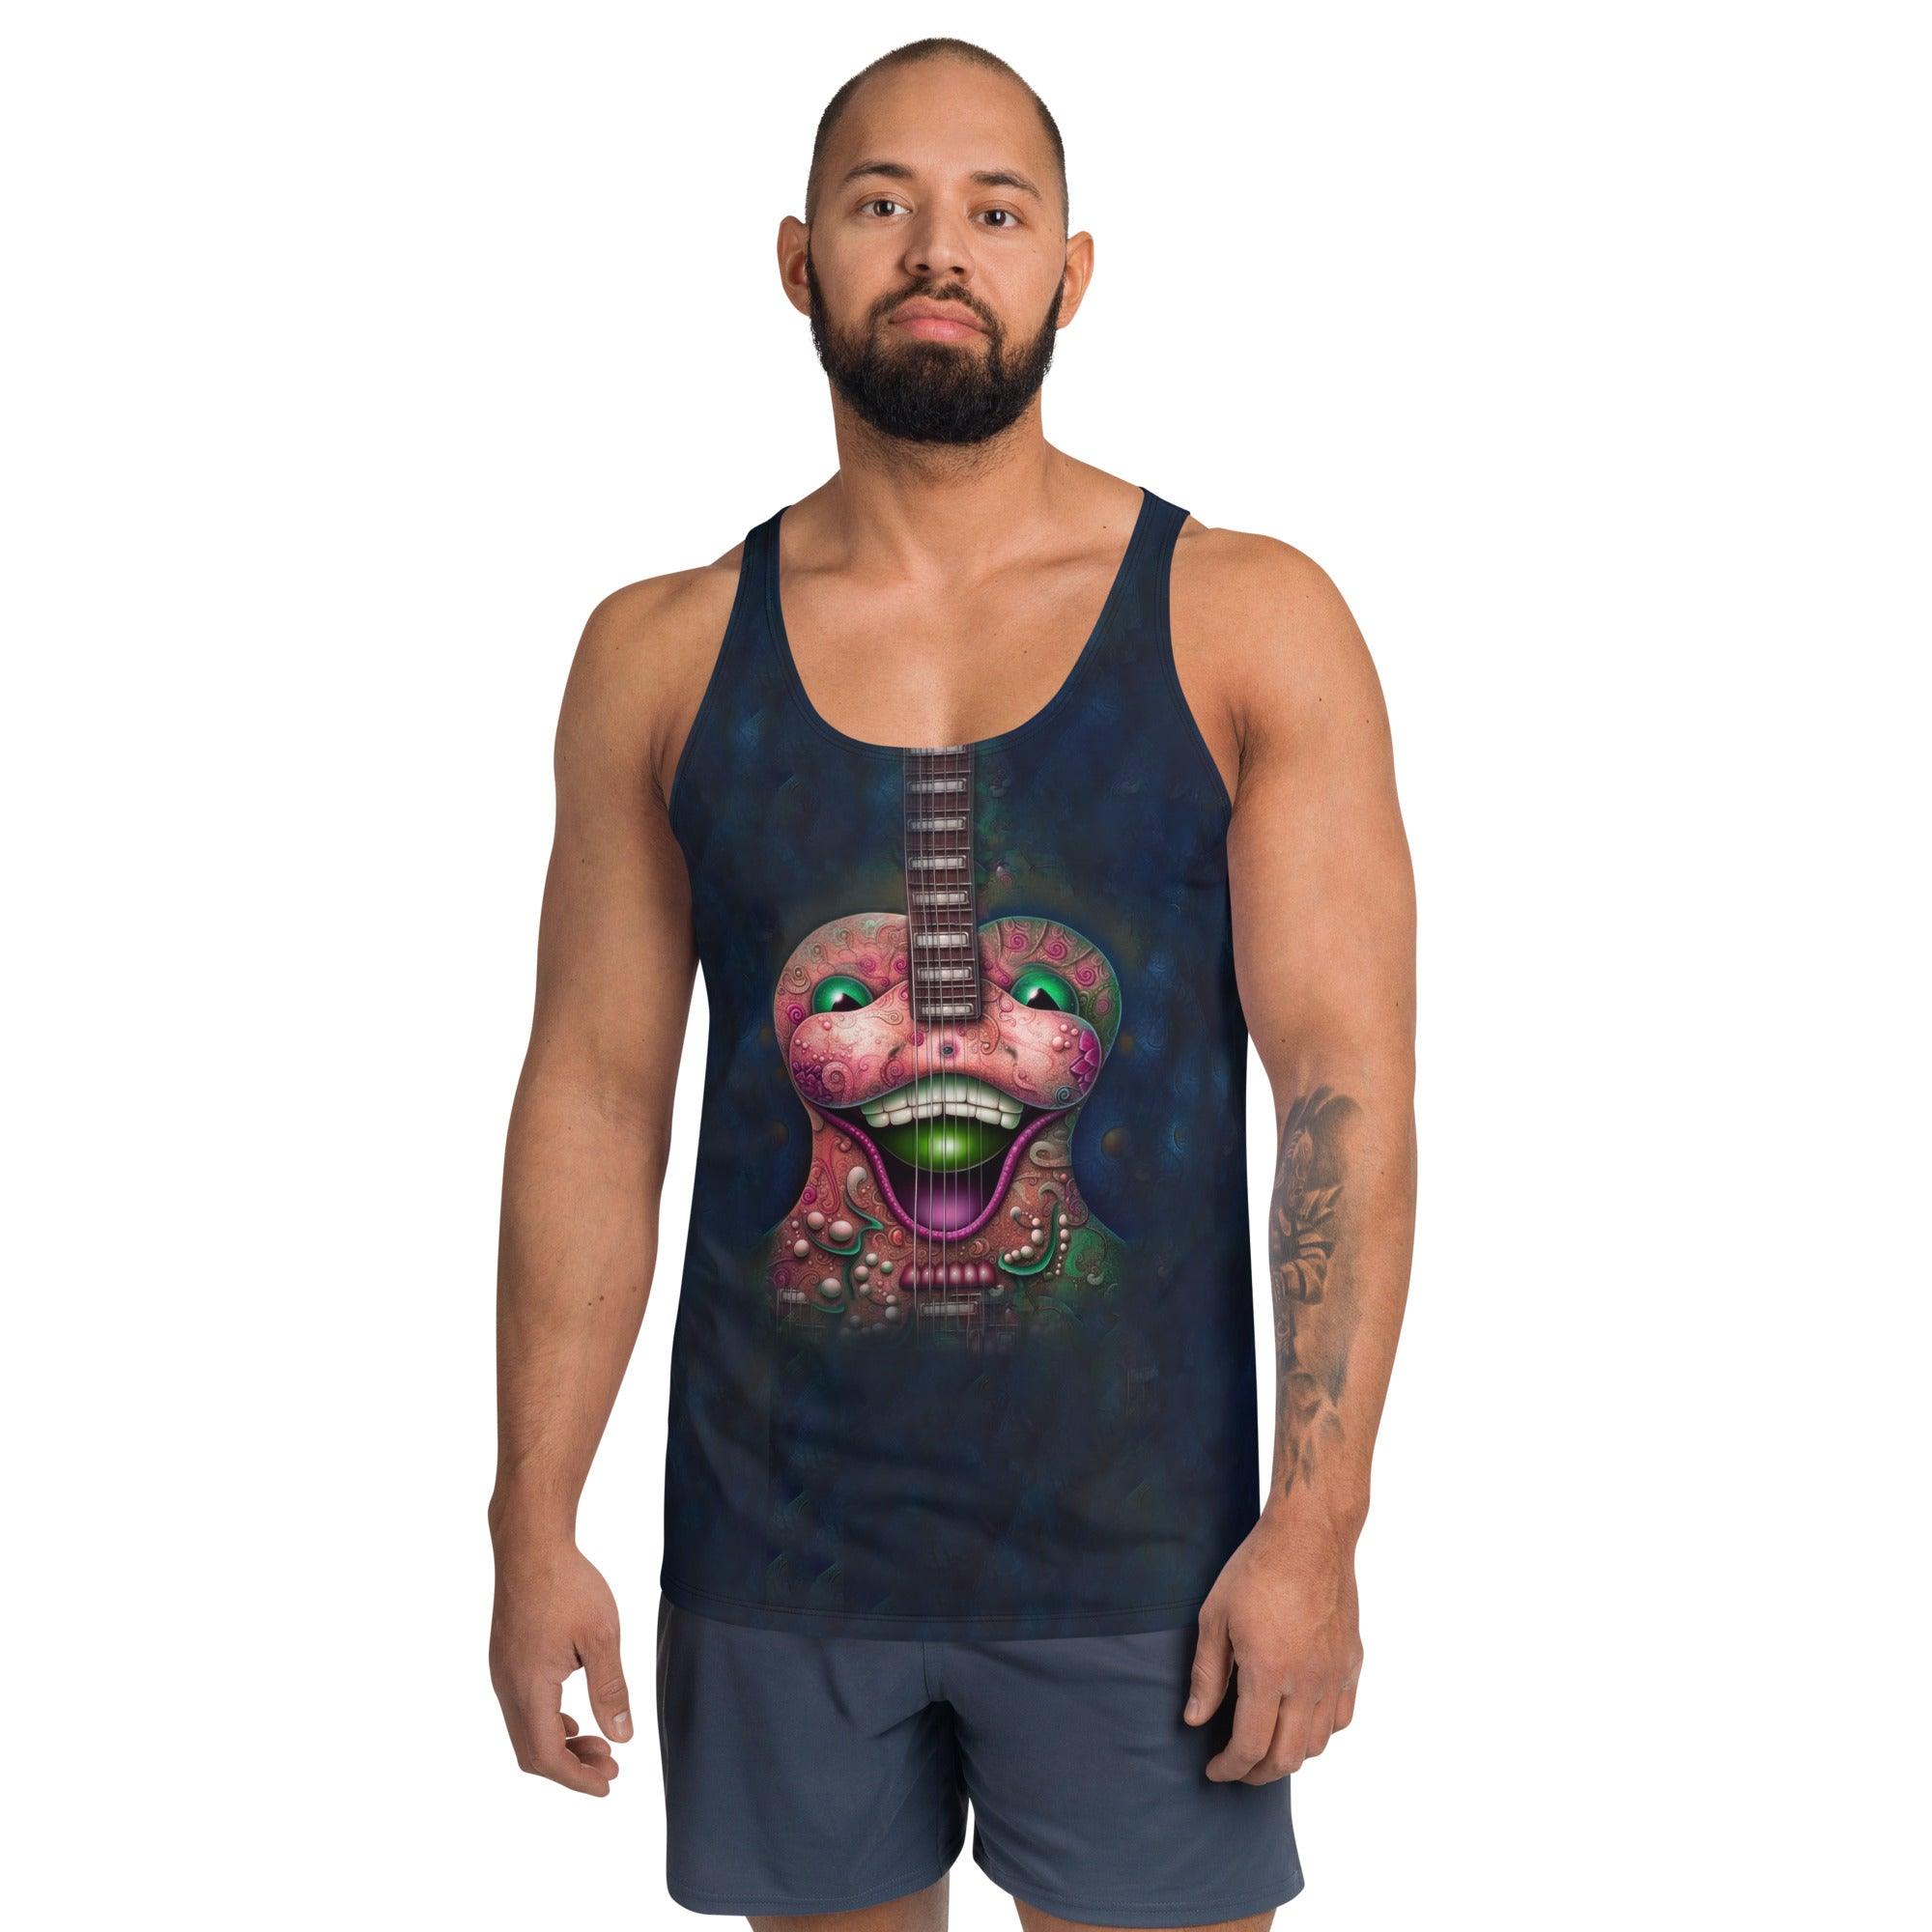 Cosmic Carousel Men's Tank Top - Beyond T-shirts